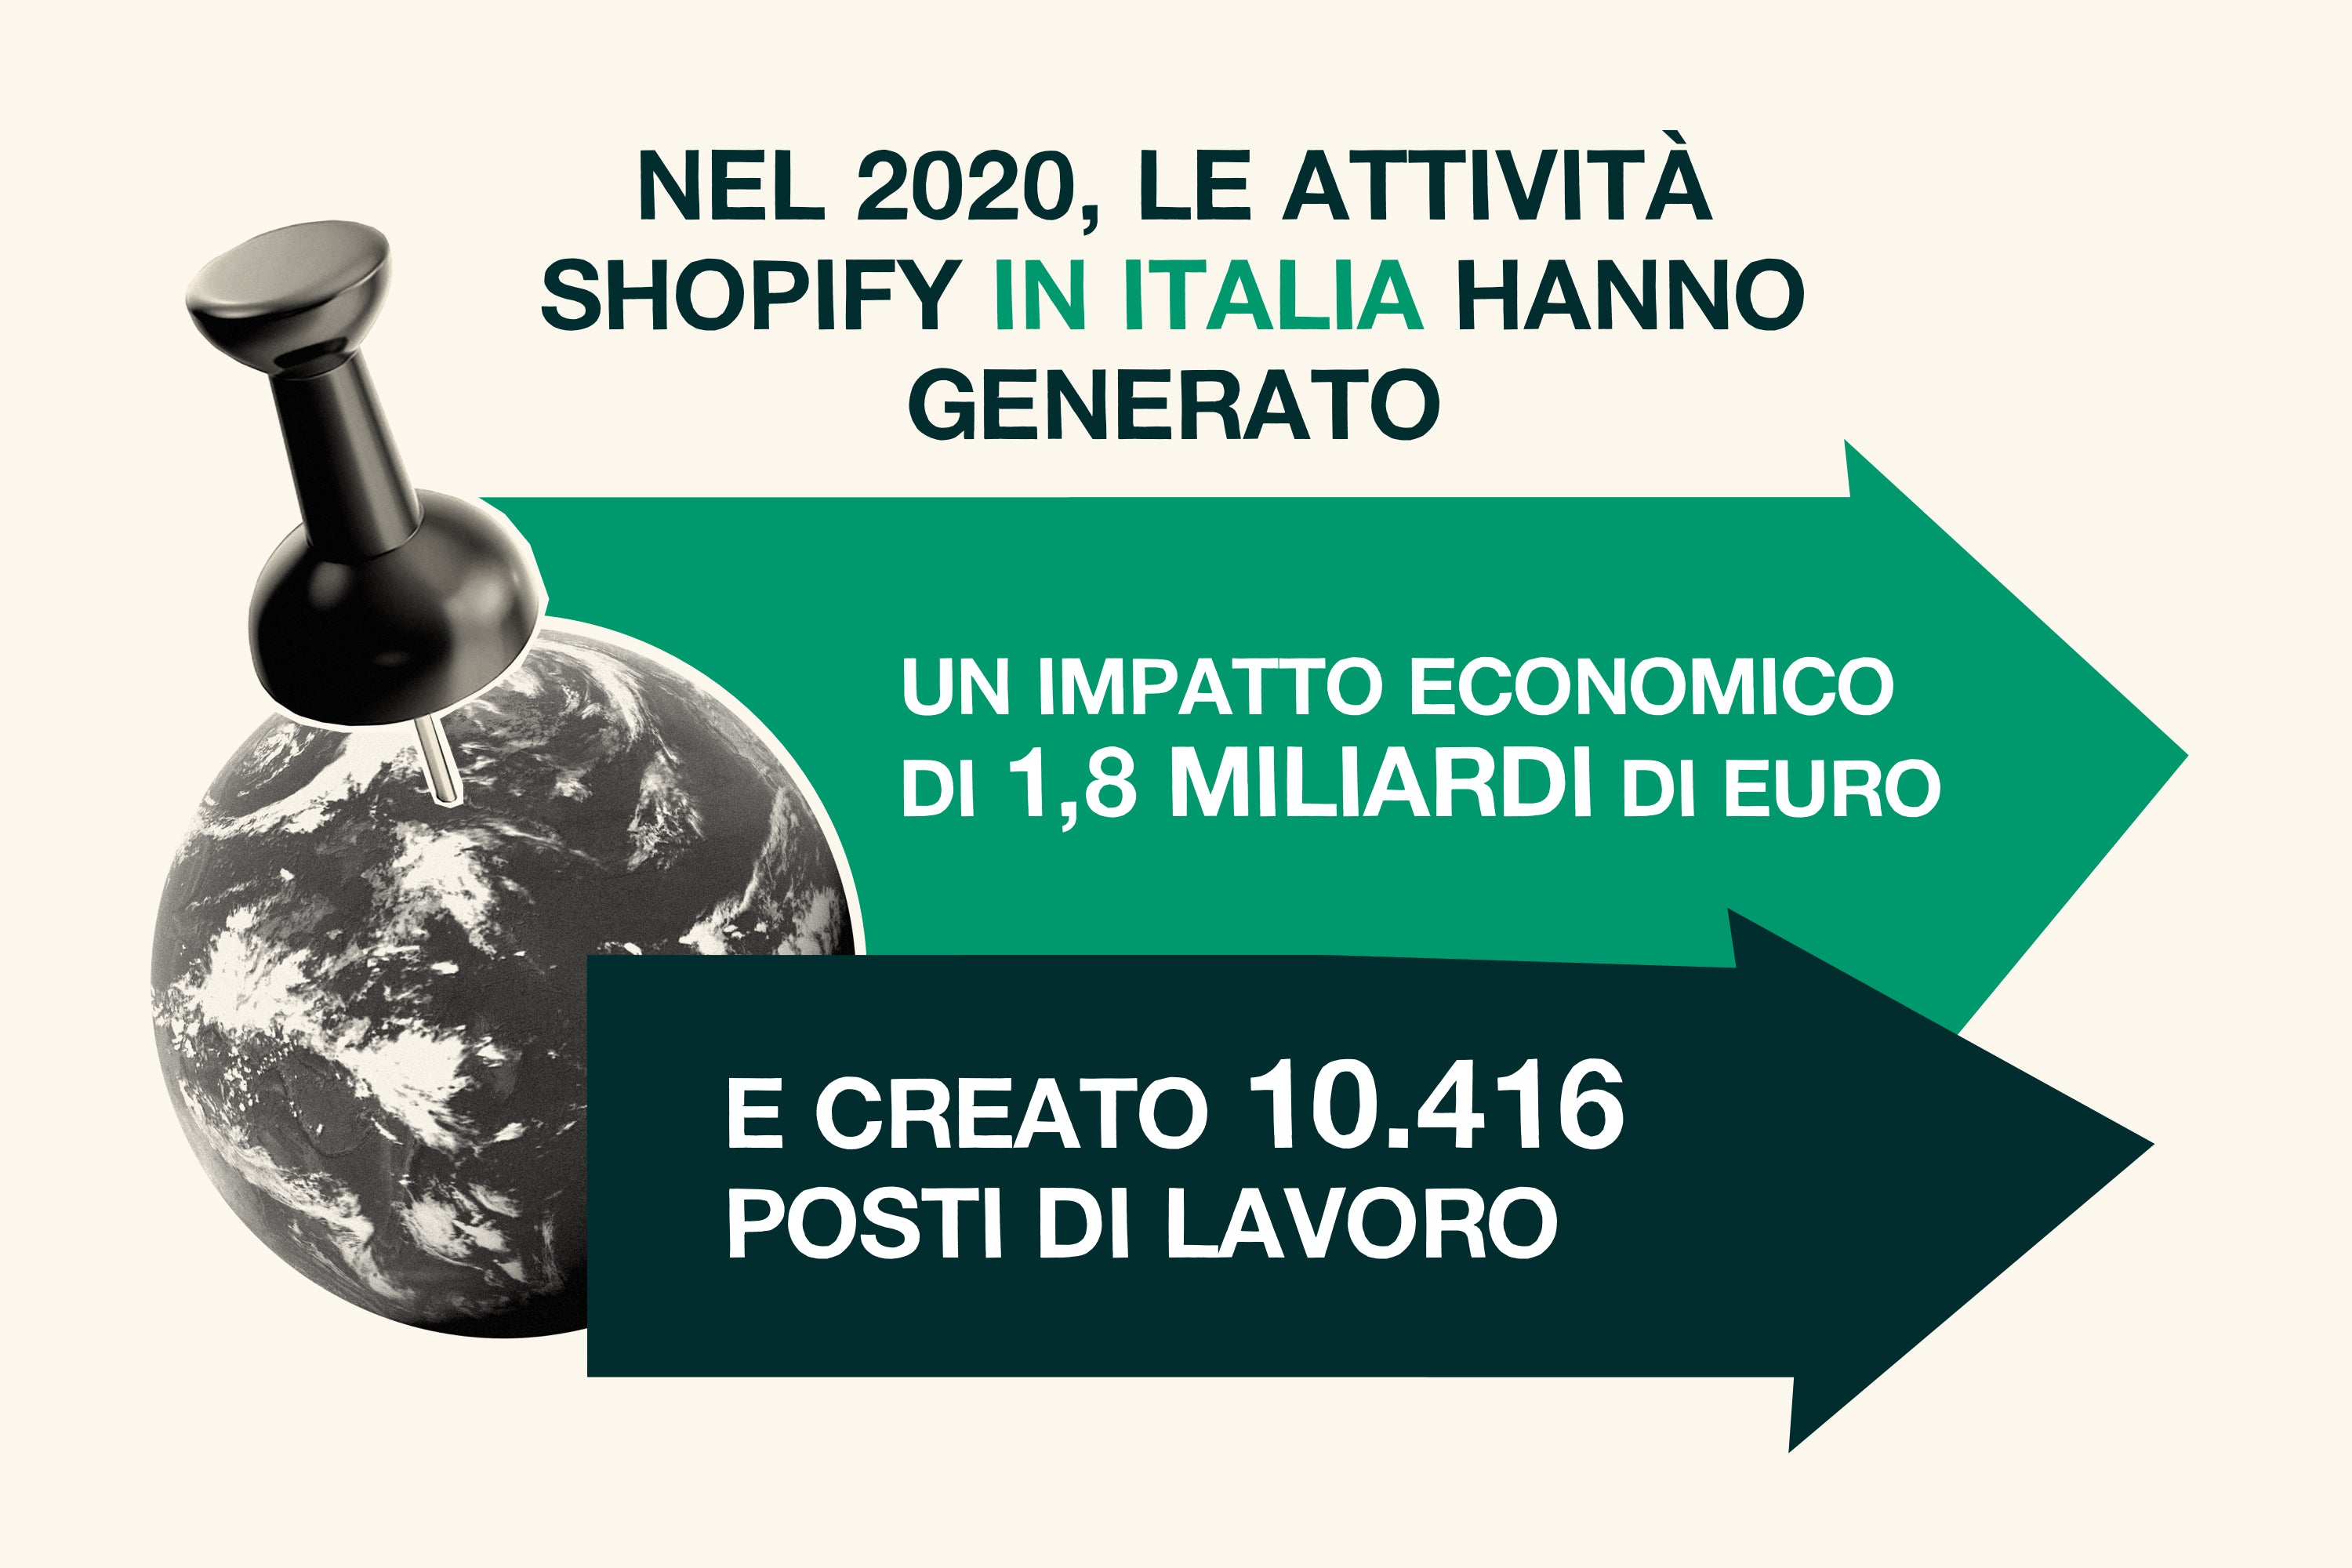 L’effetto Shopify in Italia